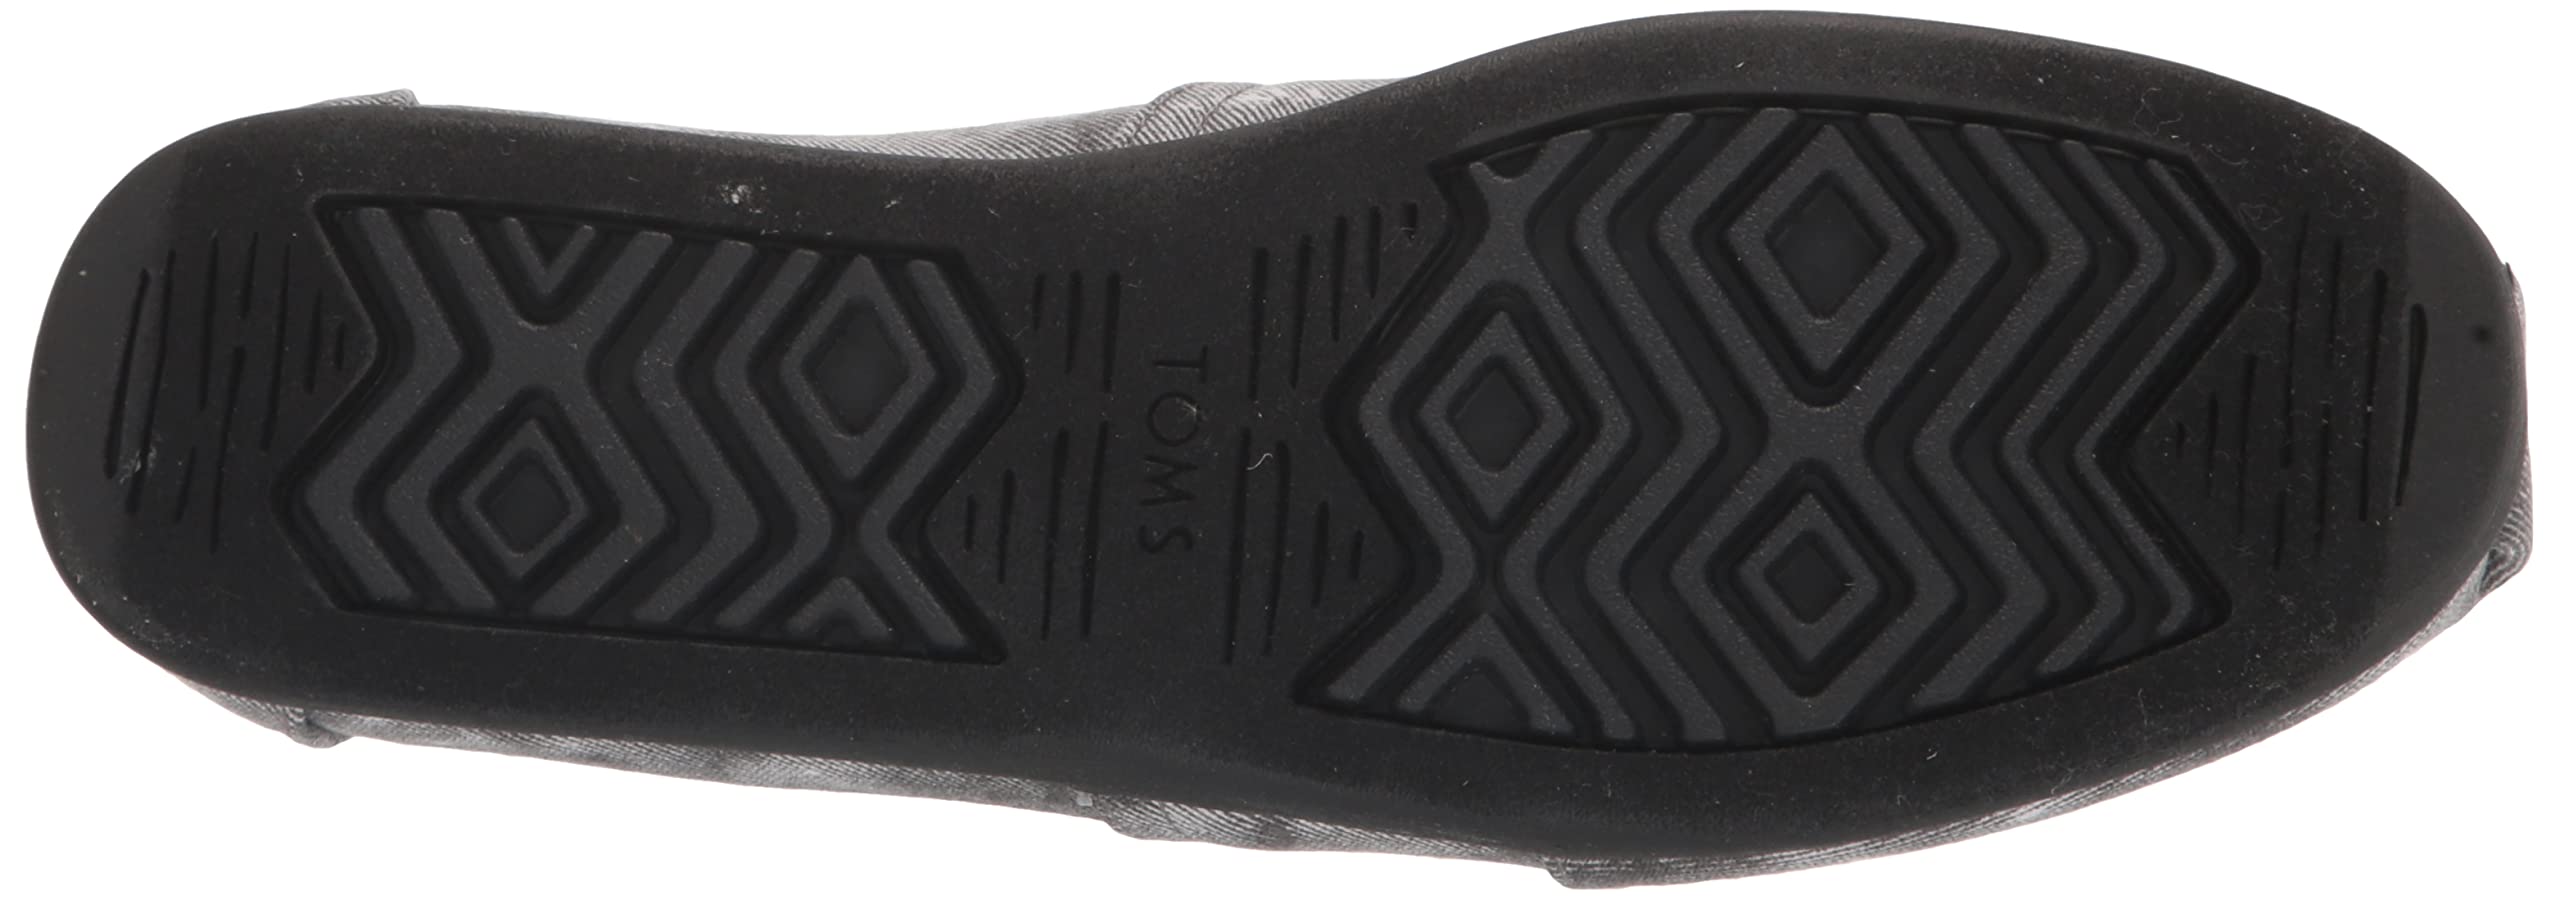 TOMS Men's Alpargata 3.0 Loafer Flat, Distressed Black/Black, 9